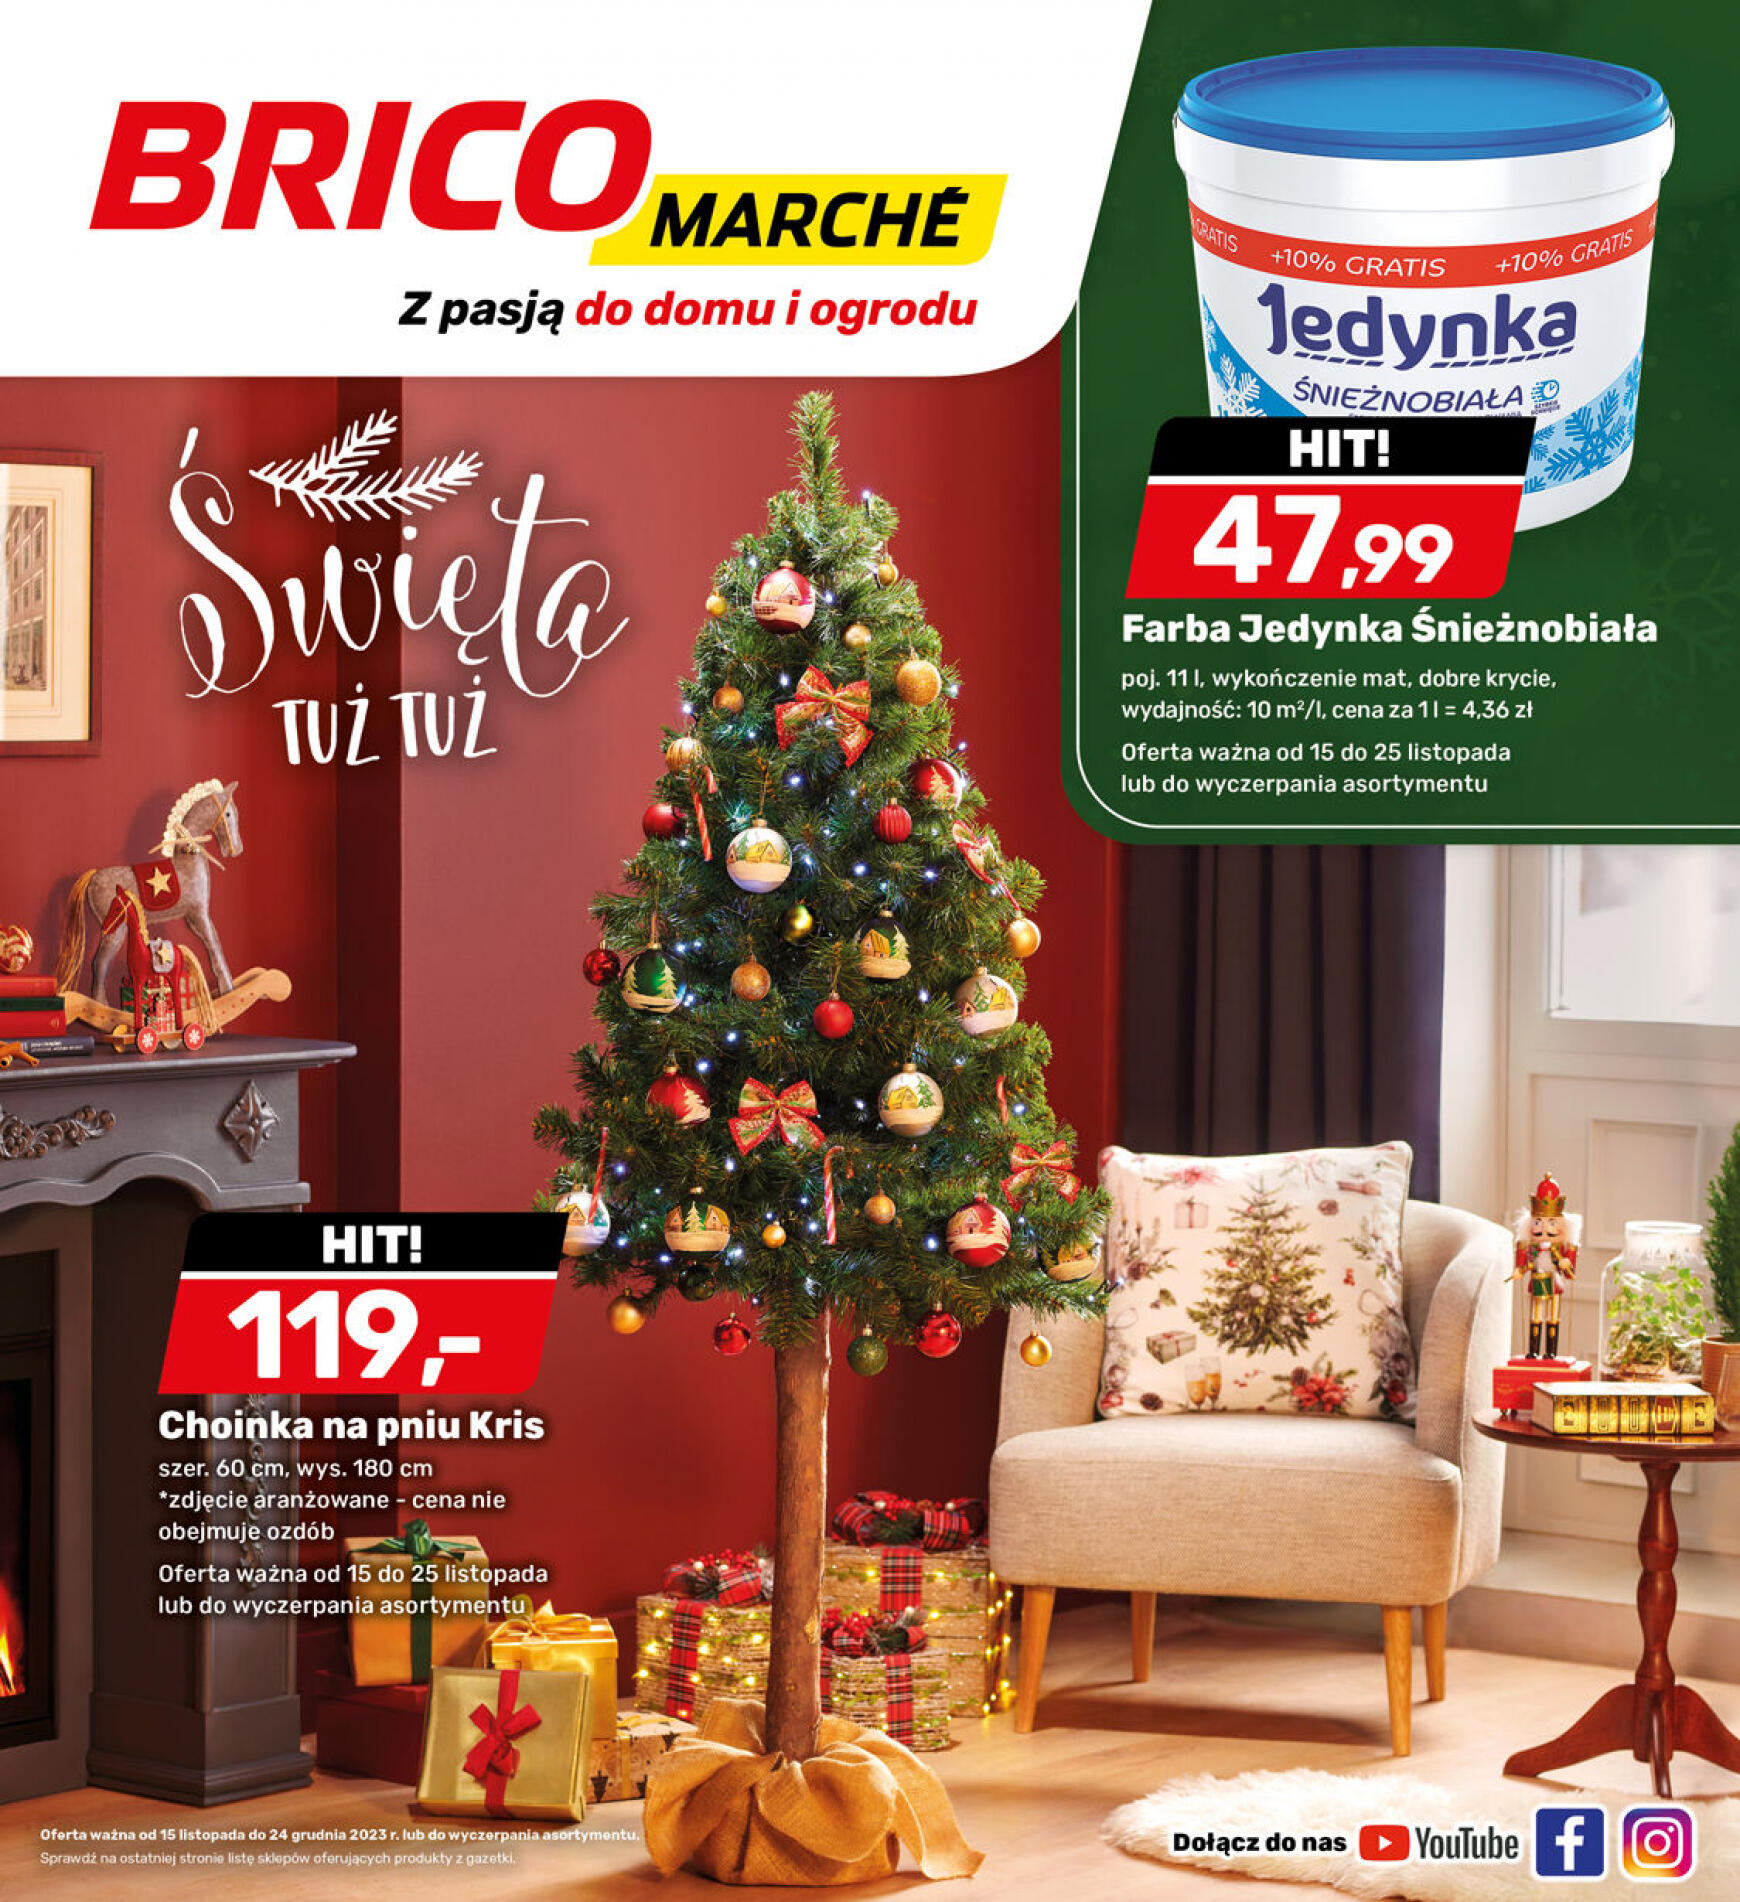 brico-marche - - Bricomarche - page: 17